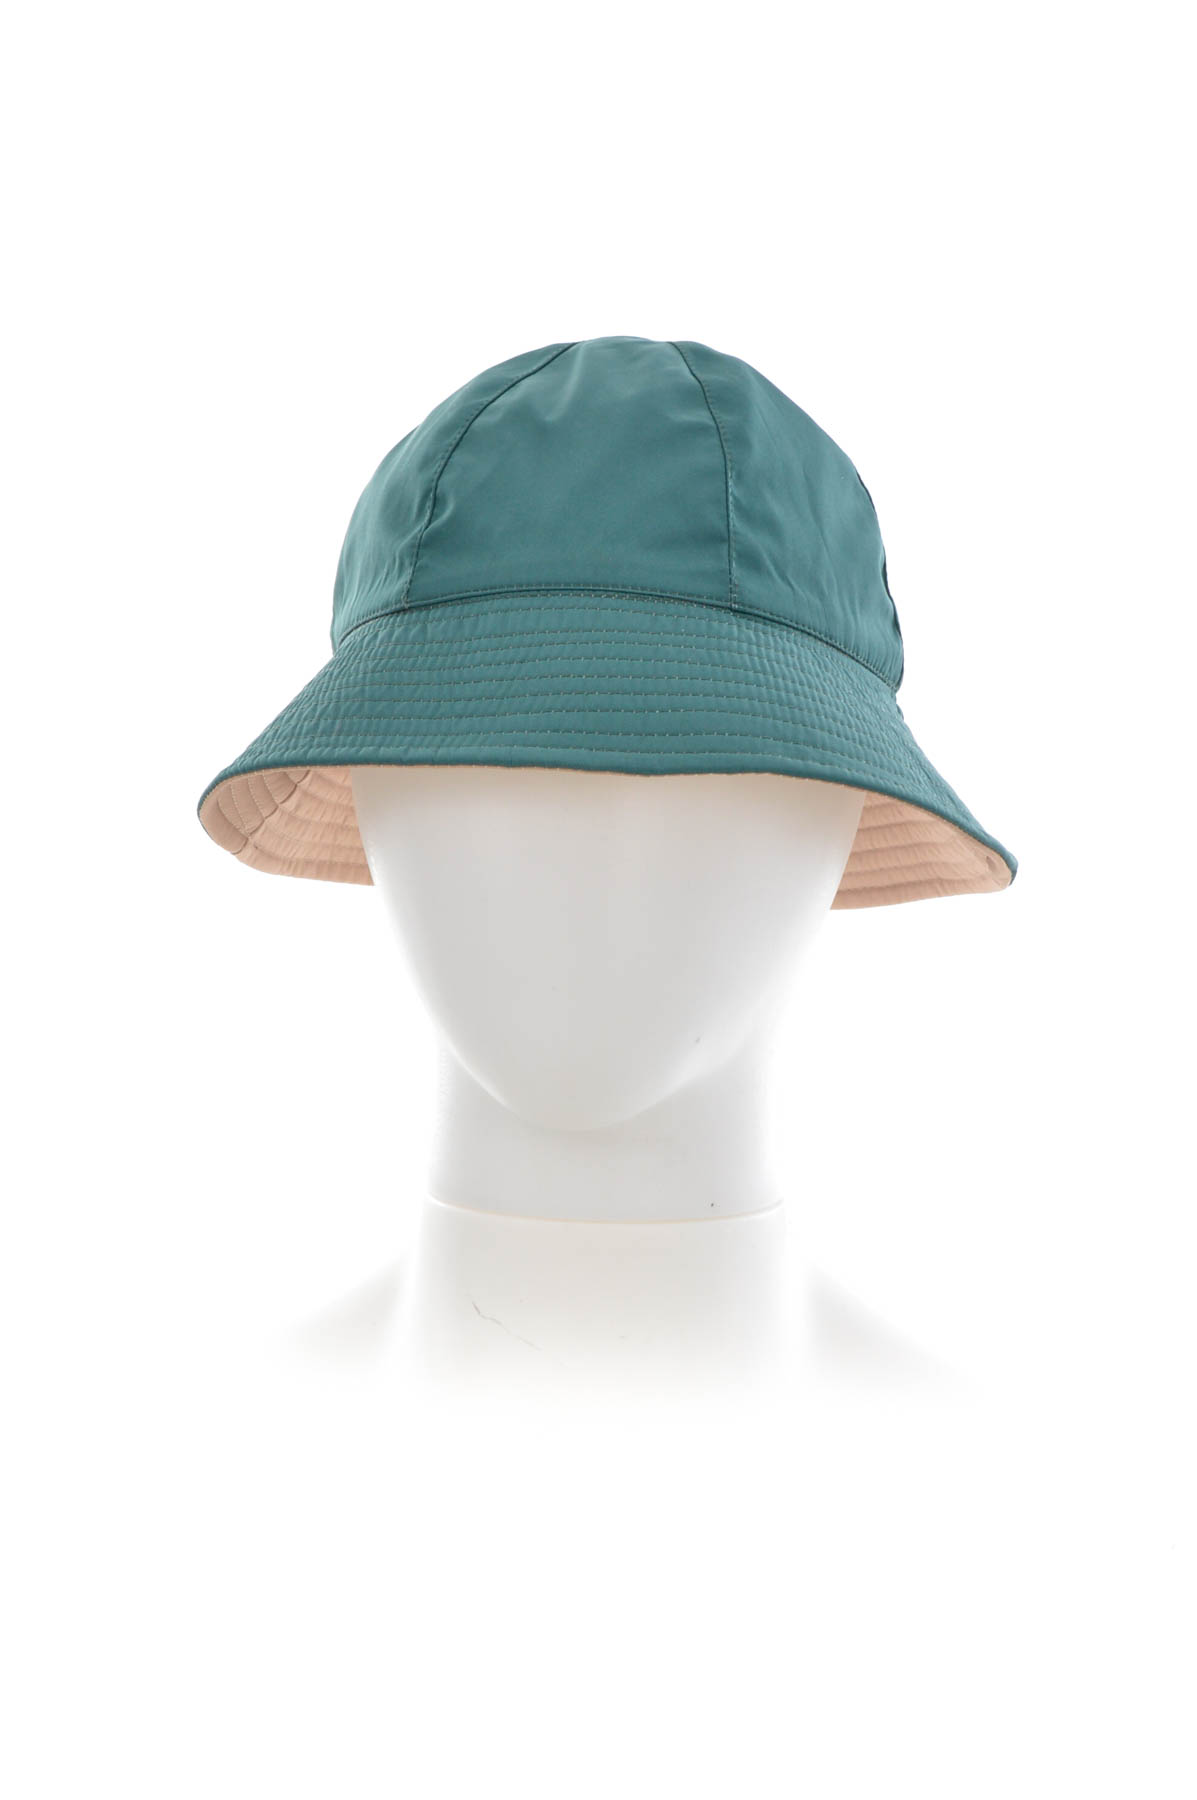 Γυναικείο καπέλο διπλής όψης - PARFOIS - 2